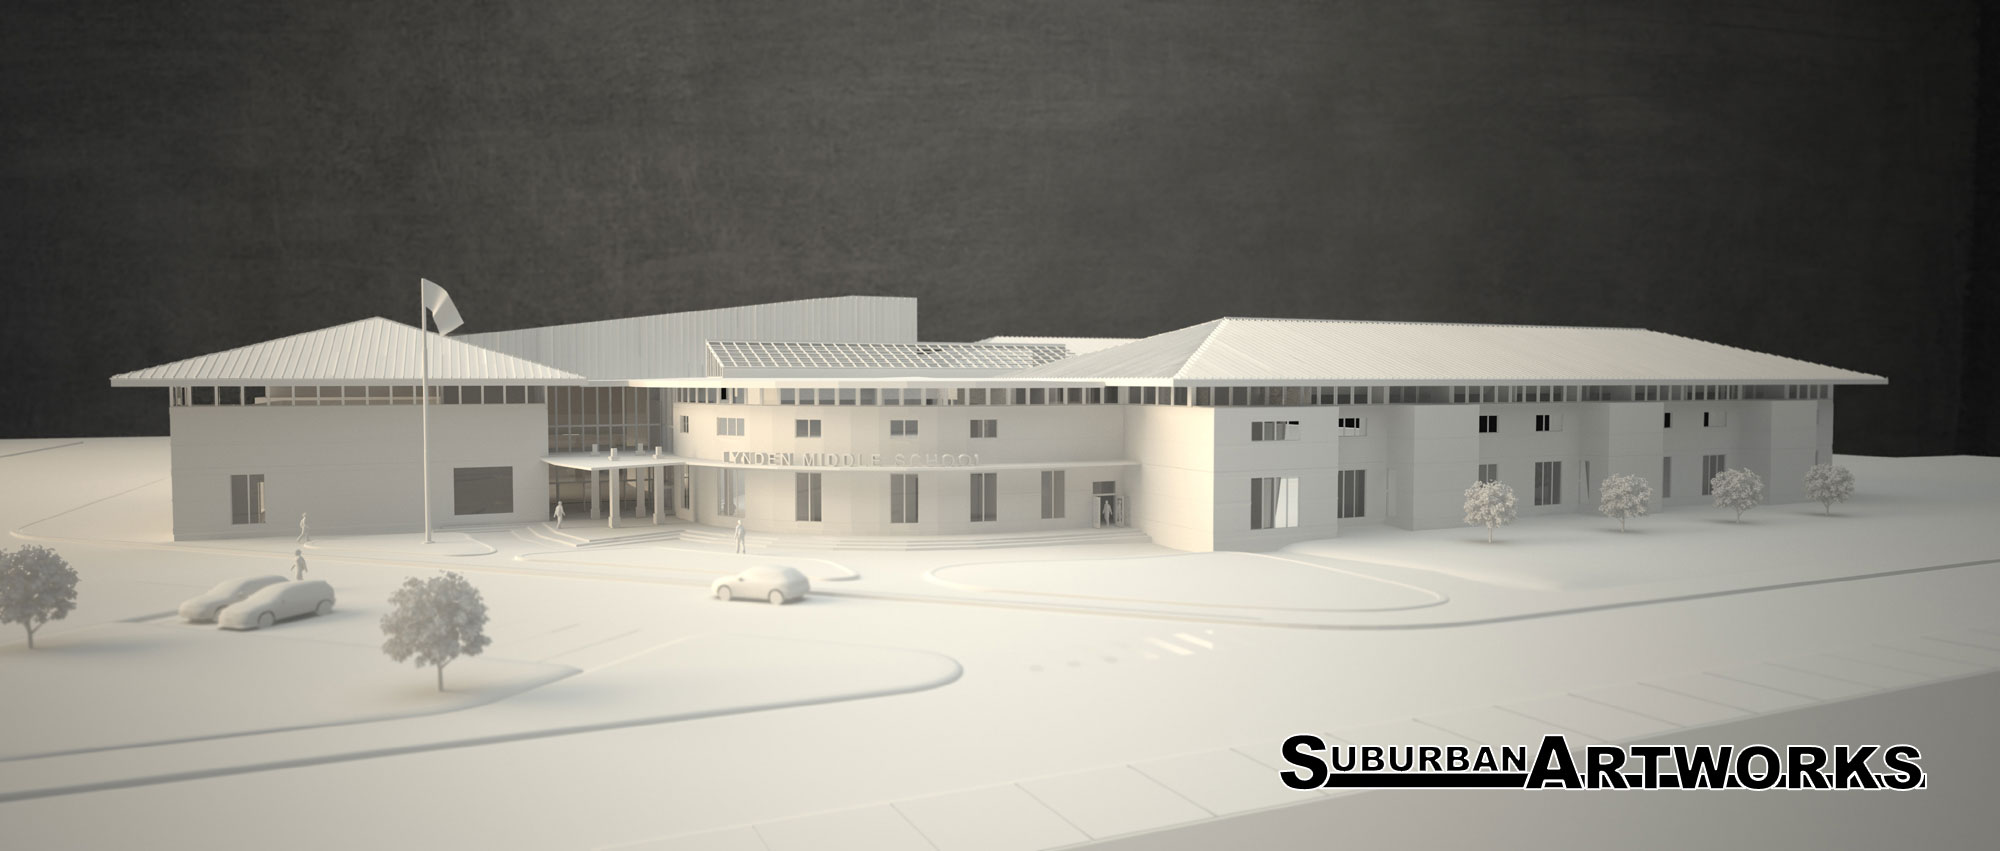 3d model rendering of school no textures